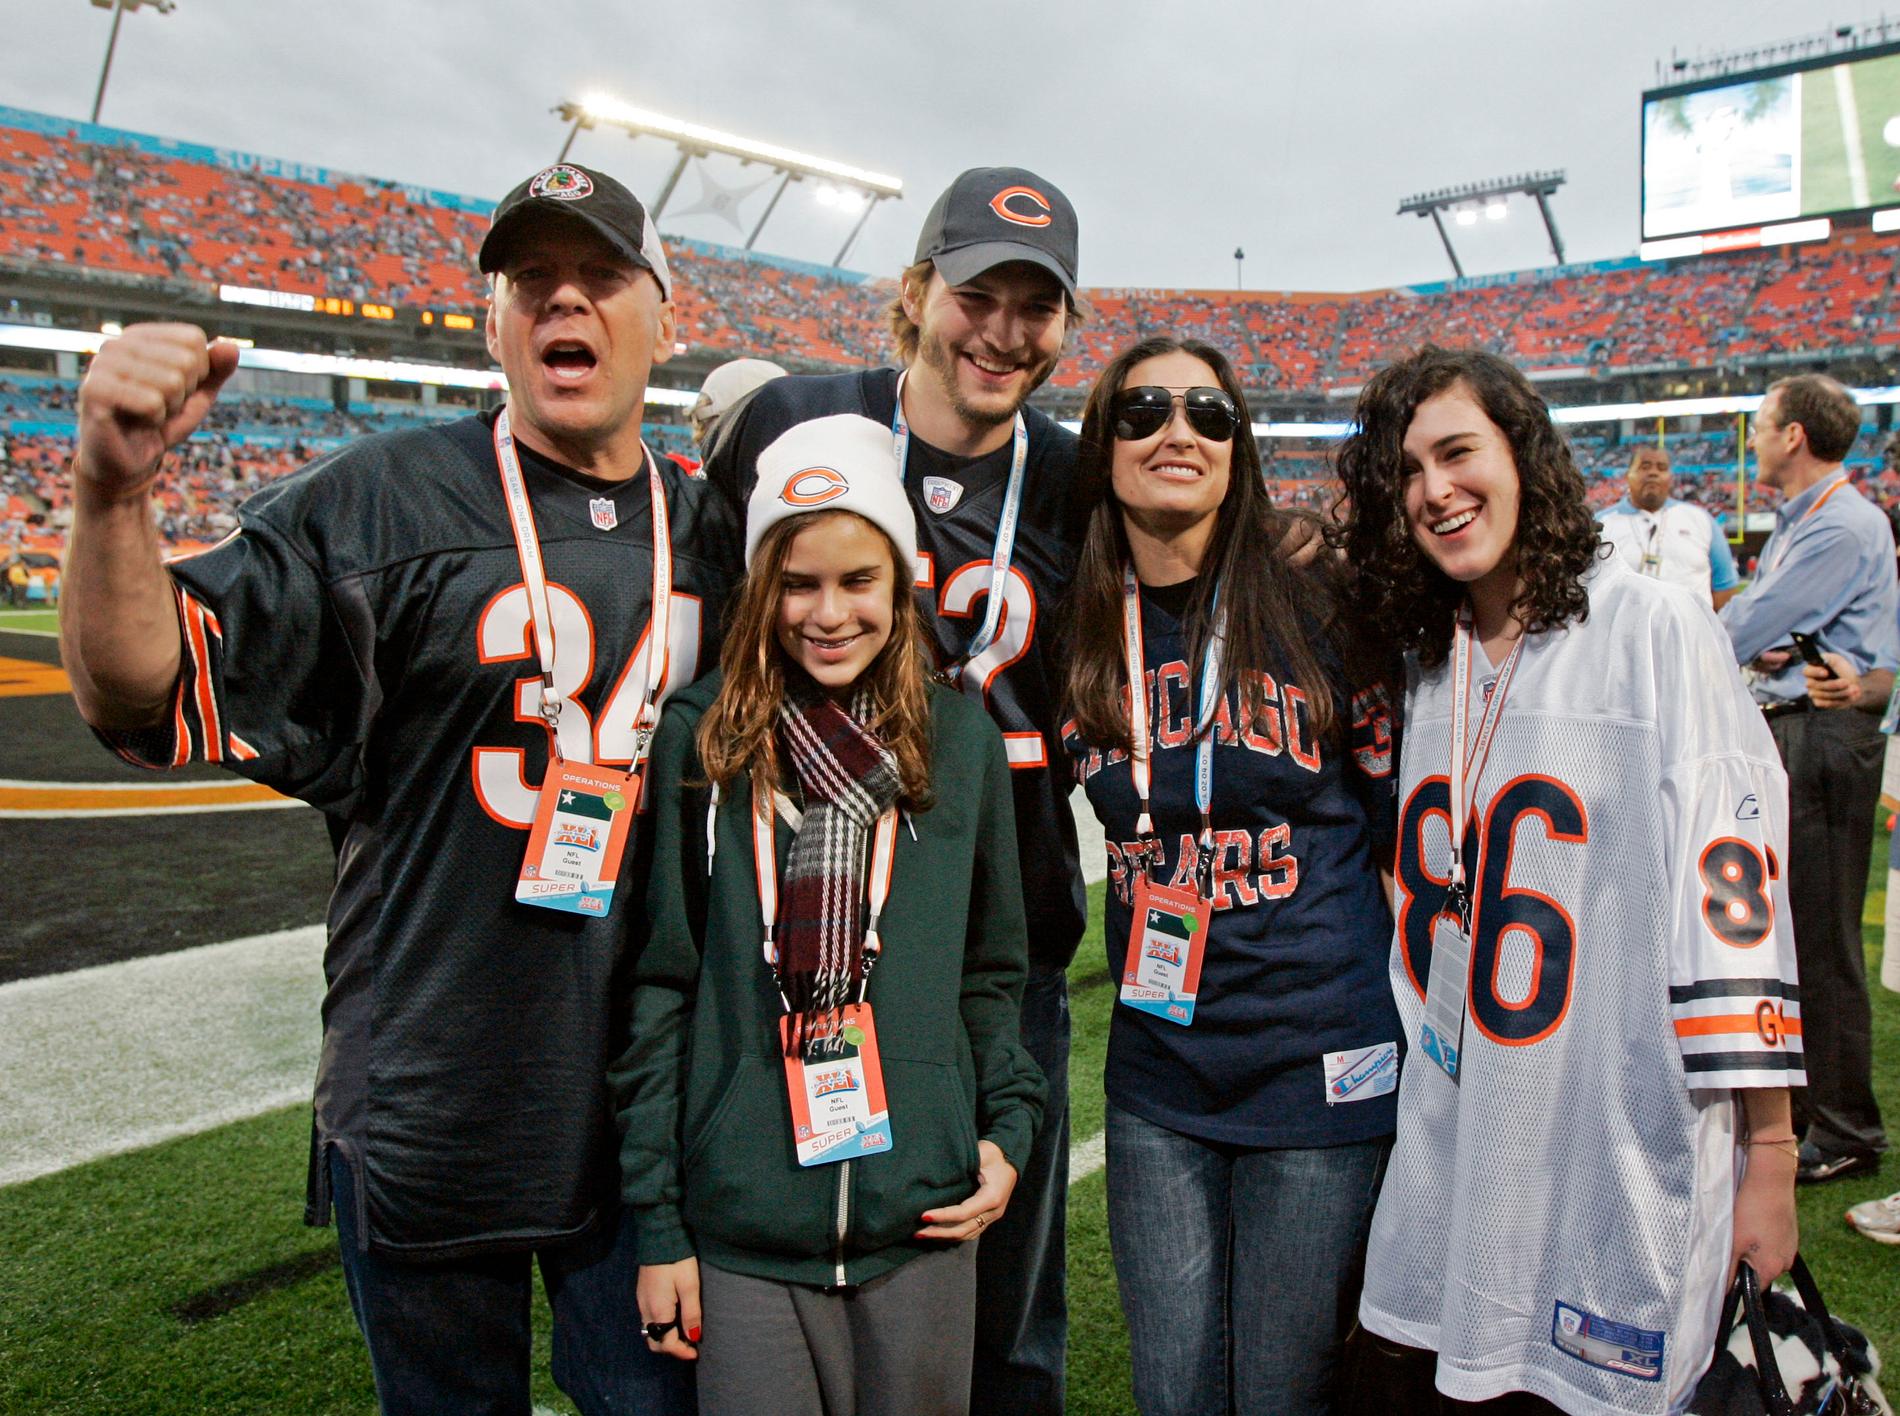 2007 Parets intresse för idrott delades av Willis och döttrarna Tallulah och Rumer. Här under Super Bowl i Miami.